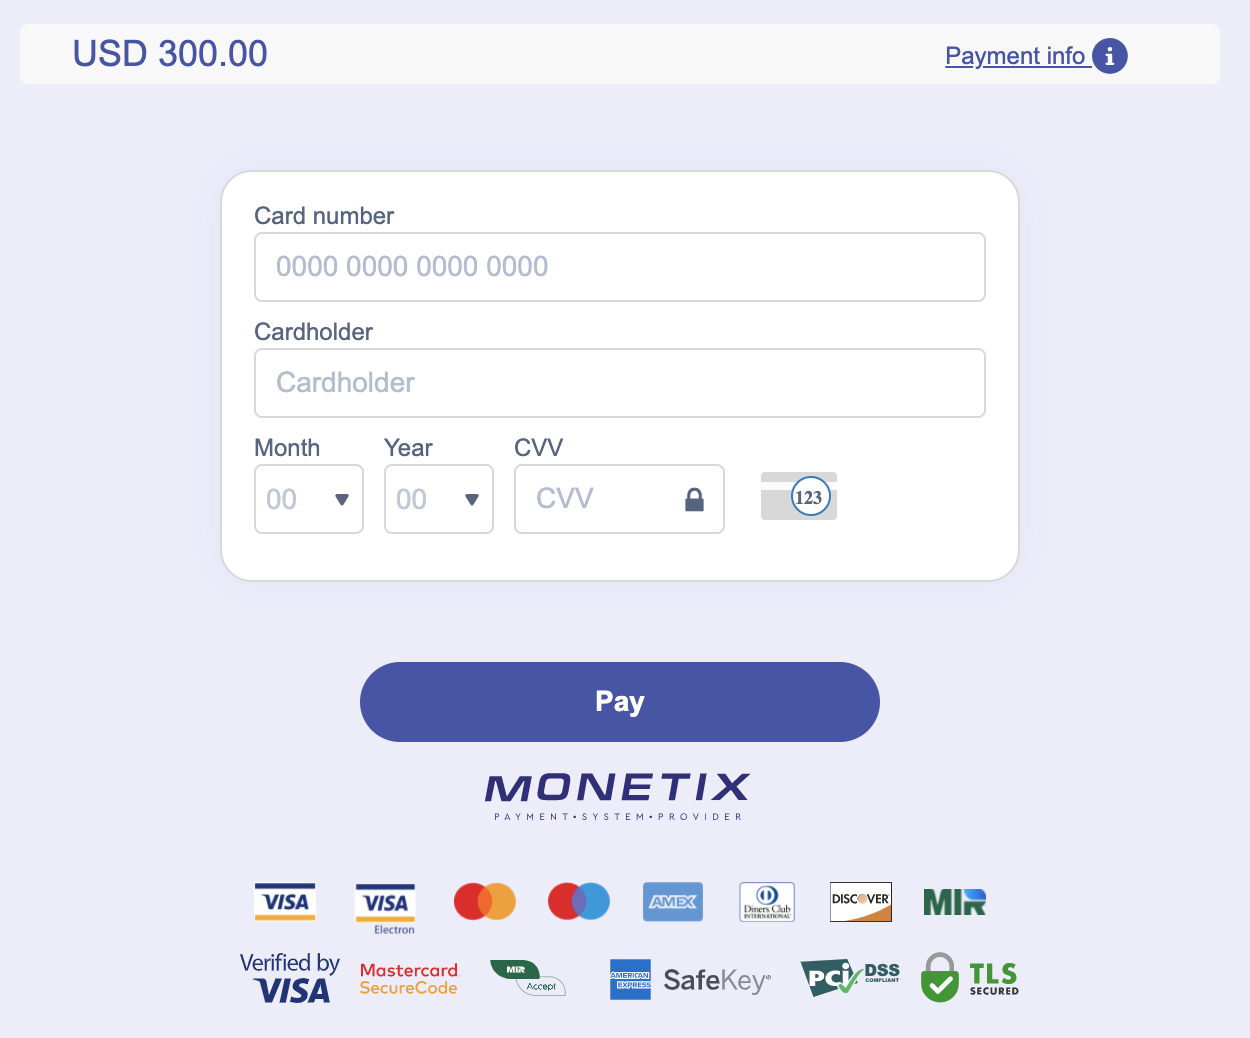 Внесите деньги в Quotex через бразильские банковские карты (Visa / MasterCard), банк (банковский перевод, Itau, Boleto), электронные платежи (Perfect Money, PIX, Paylivre, PicPay) и криптовалюты